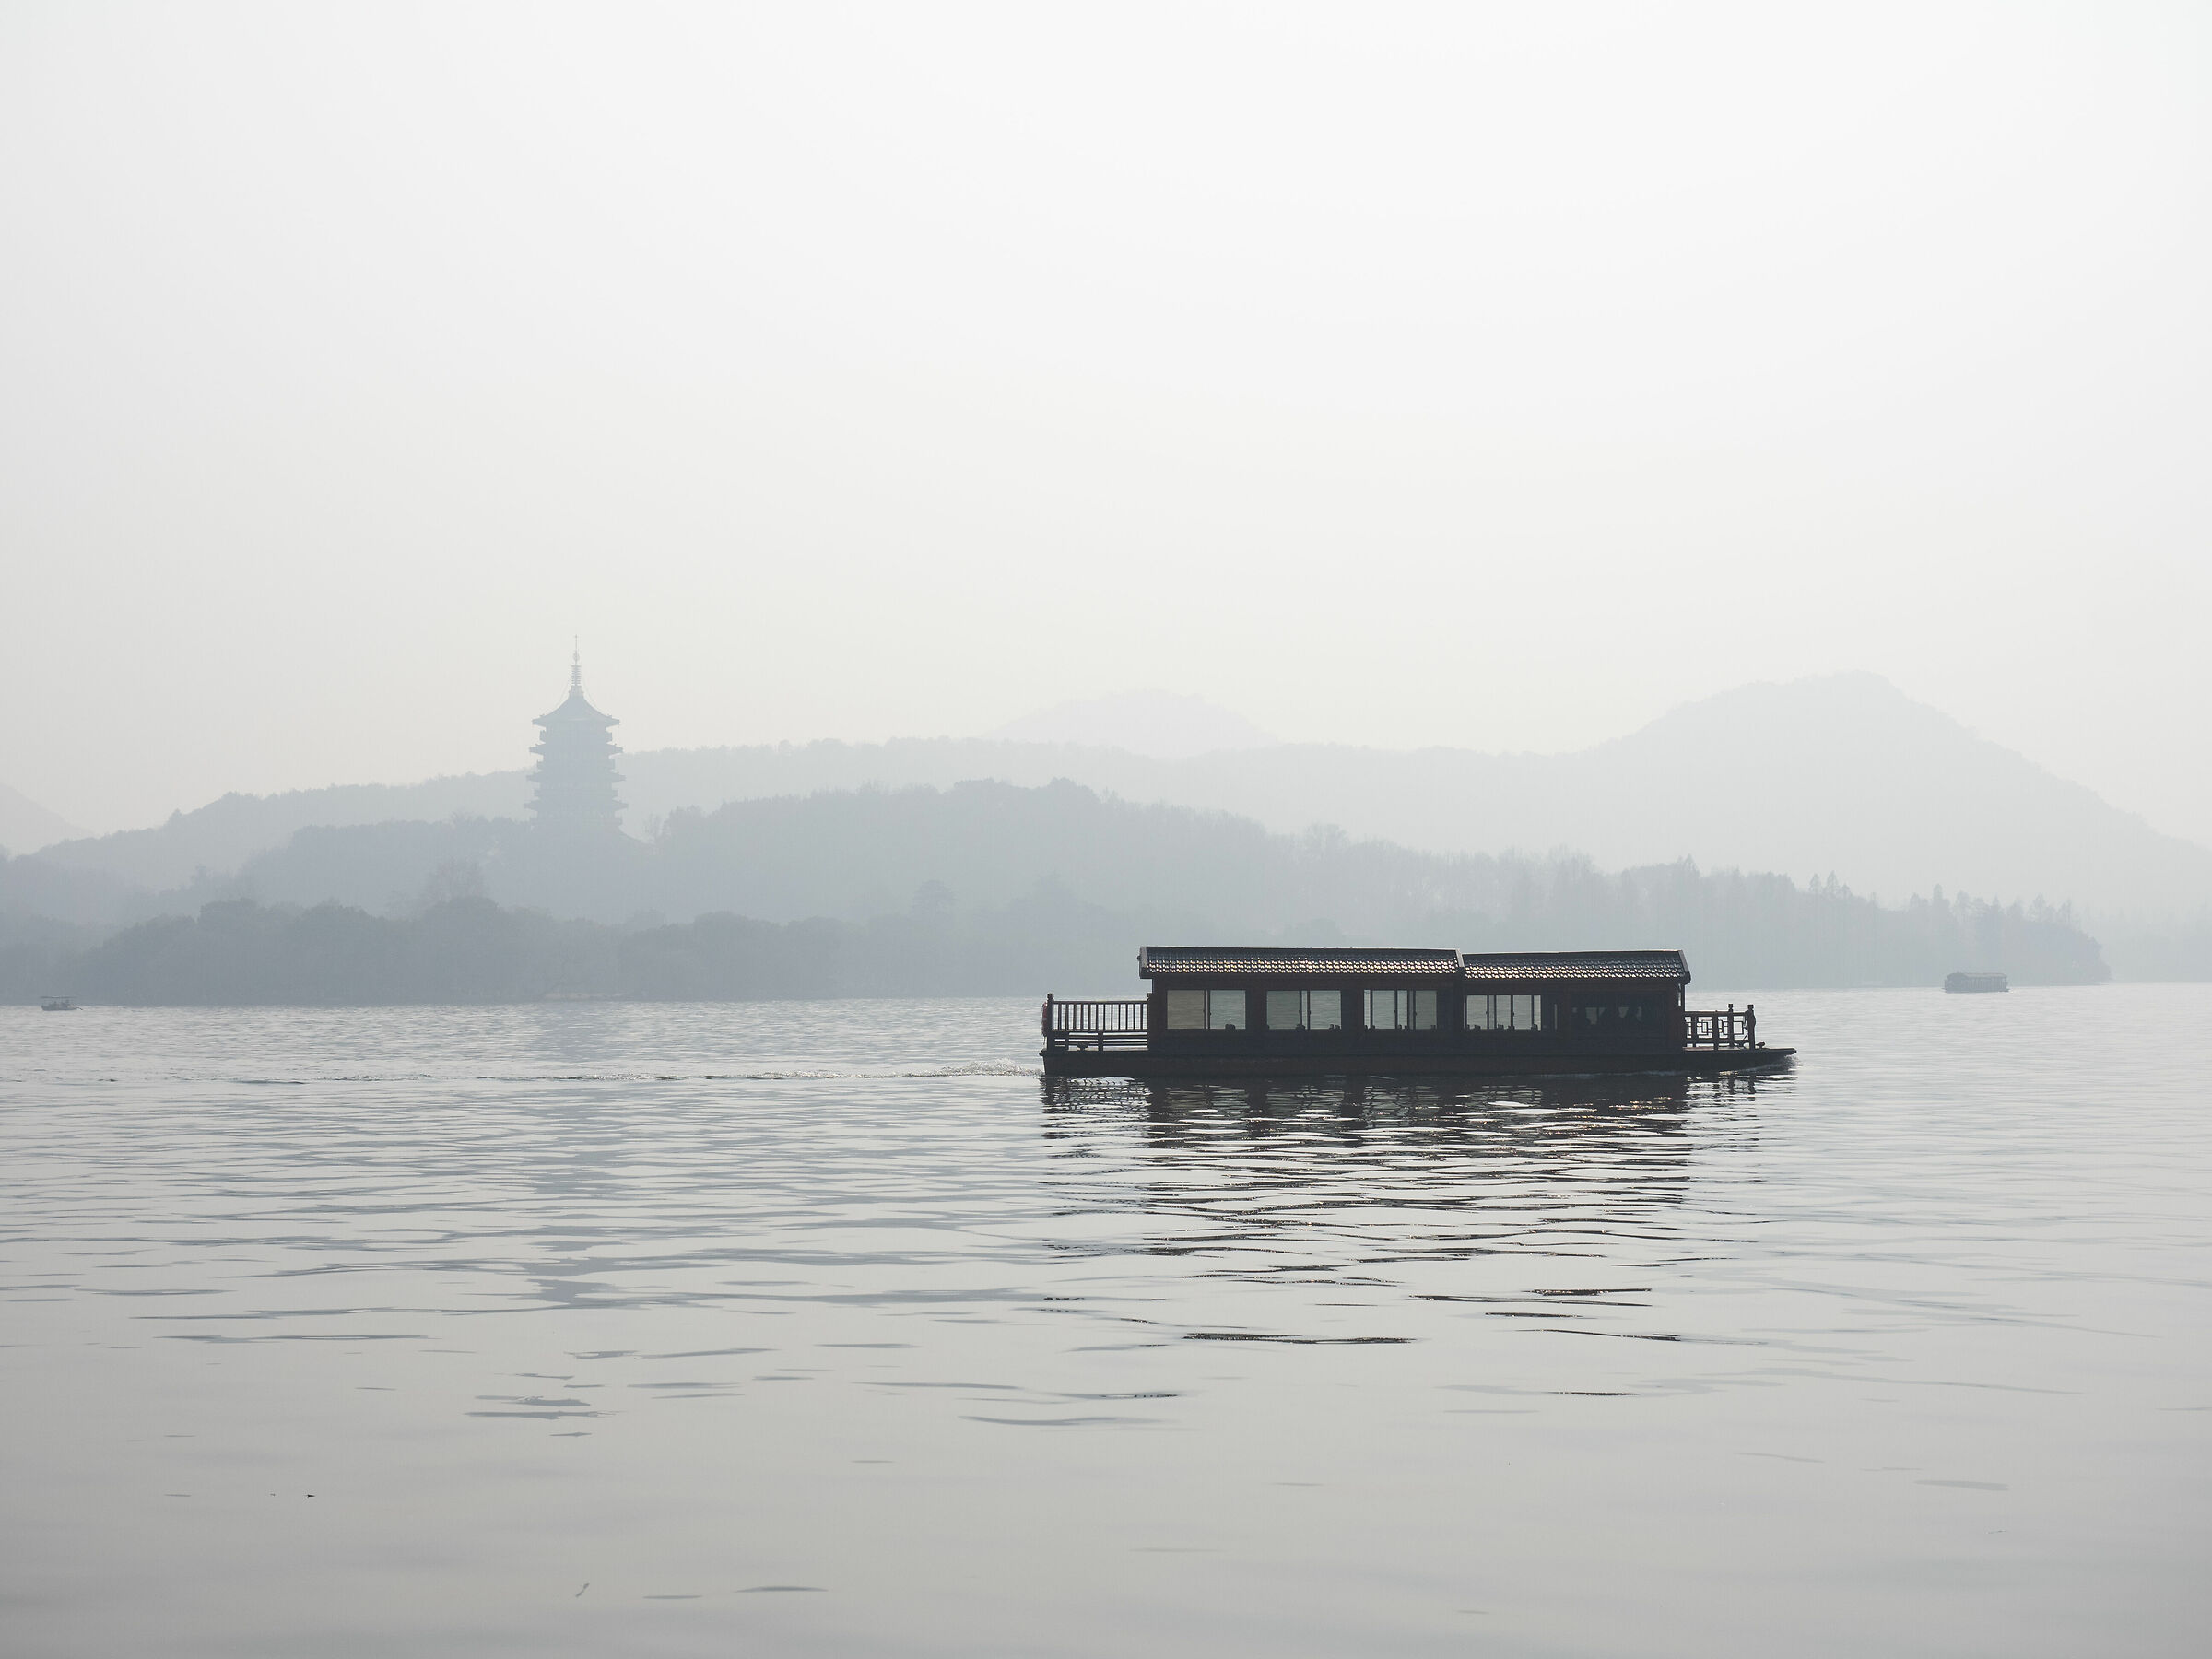 Le placide acque del lago di Hangzhou...